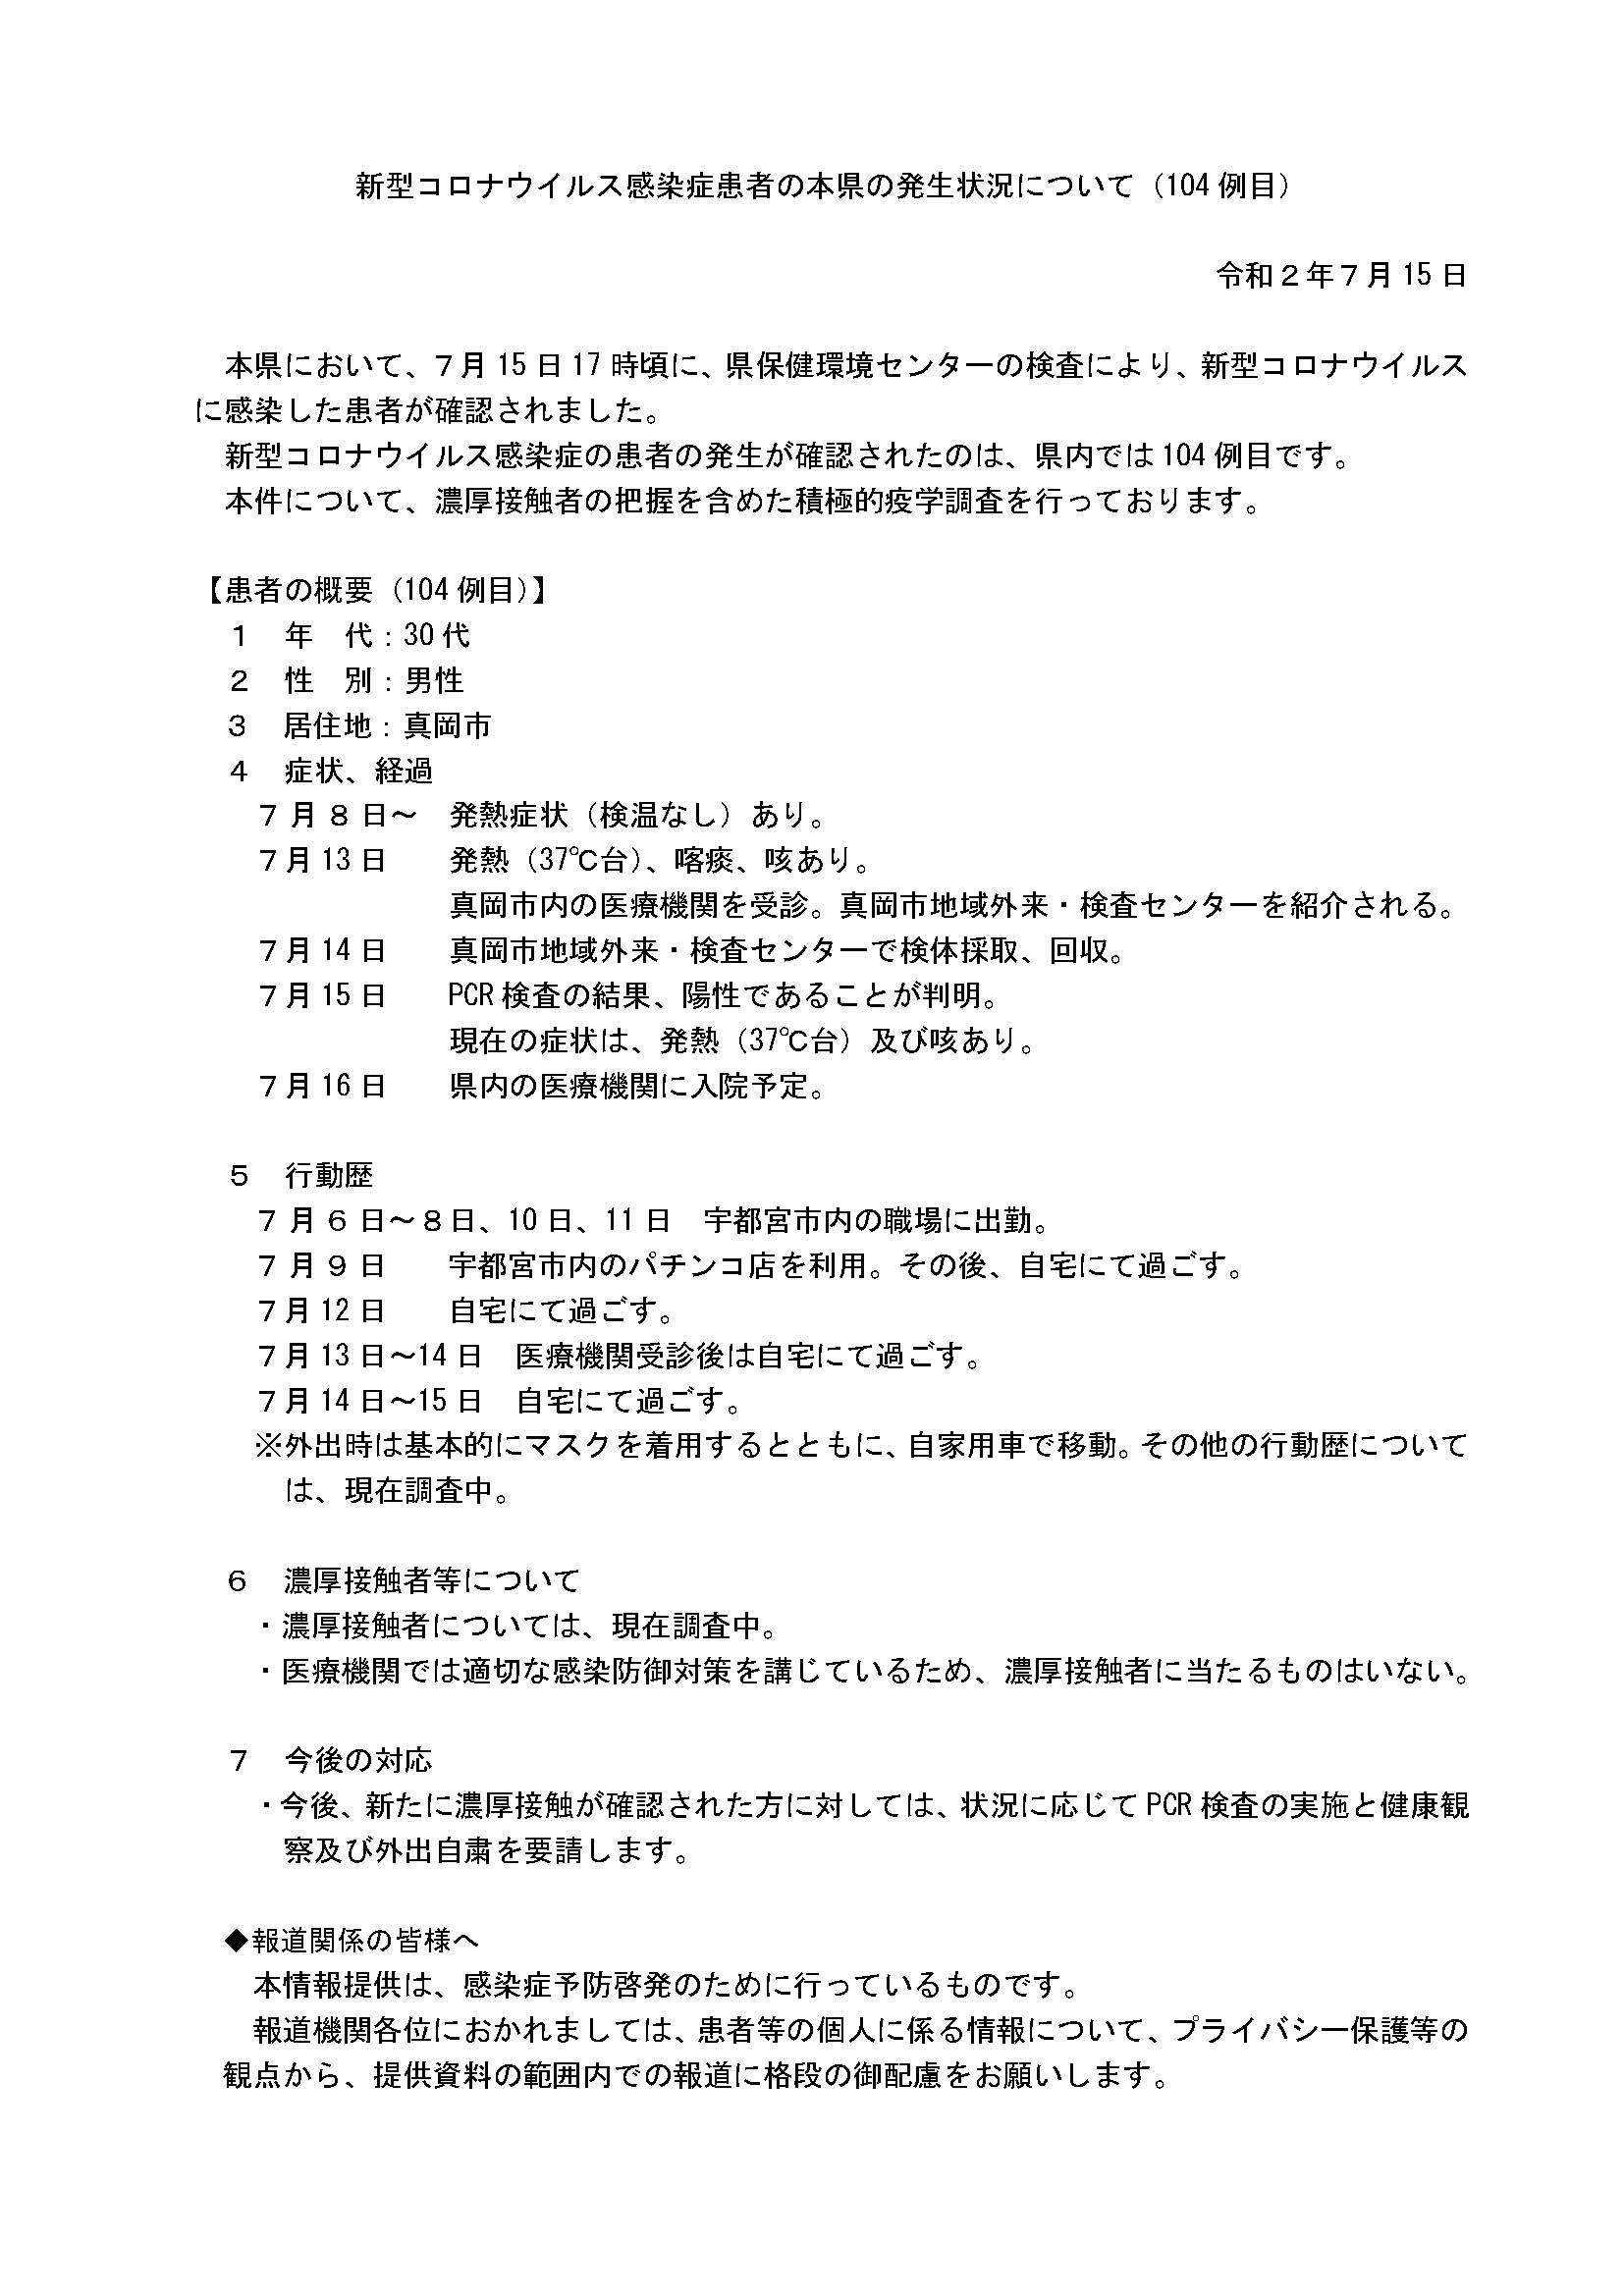 【悲報】栃木県のコロナ感染者の行動履歴に宇都宮市のパチンコ店が記載される…